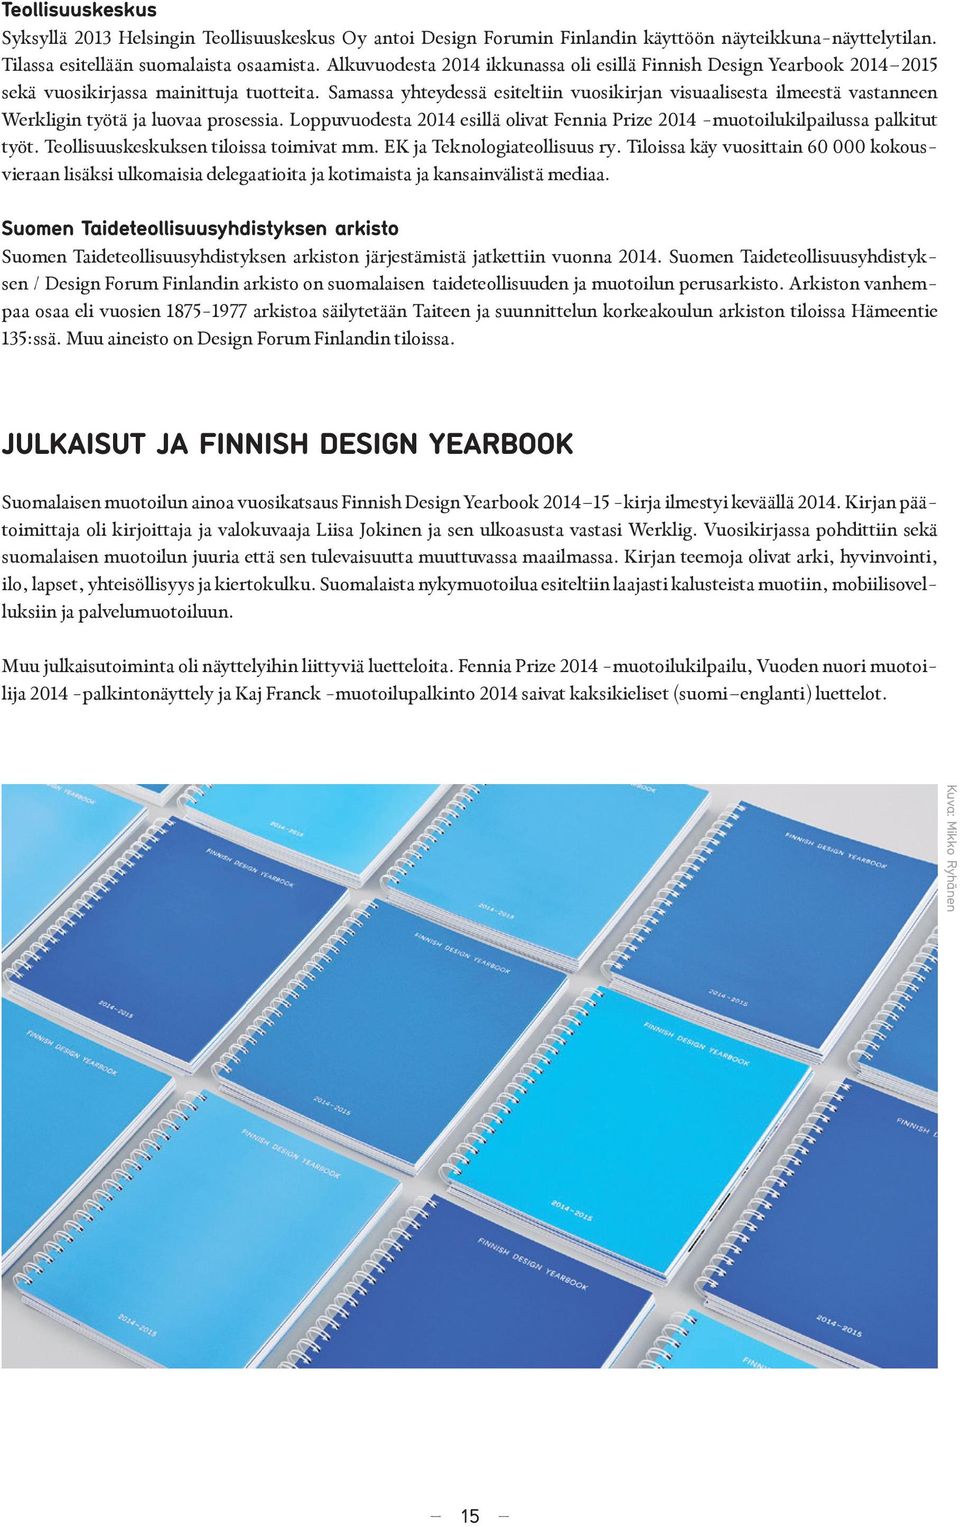 Samassa yhteydessä esiteltiin vuosikirjan visuaalisesta ilmeestä vastanneen Werkligin työtä ja luovaa prosessia. Loppuvuodesta 2014 esillä olivat Fennia Prize 2014 -muotoilukilpailussa palkitut työt.